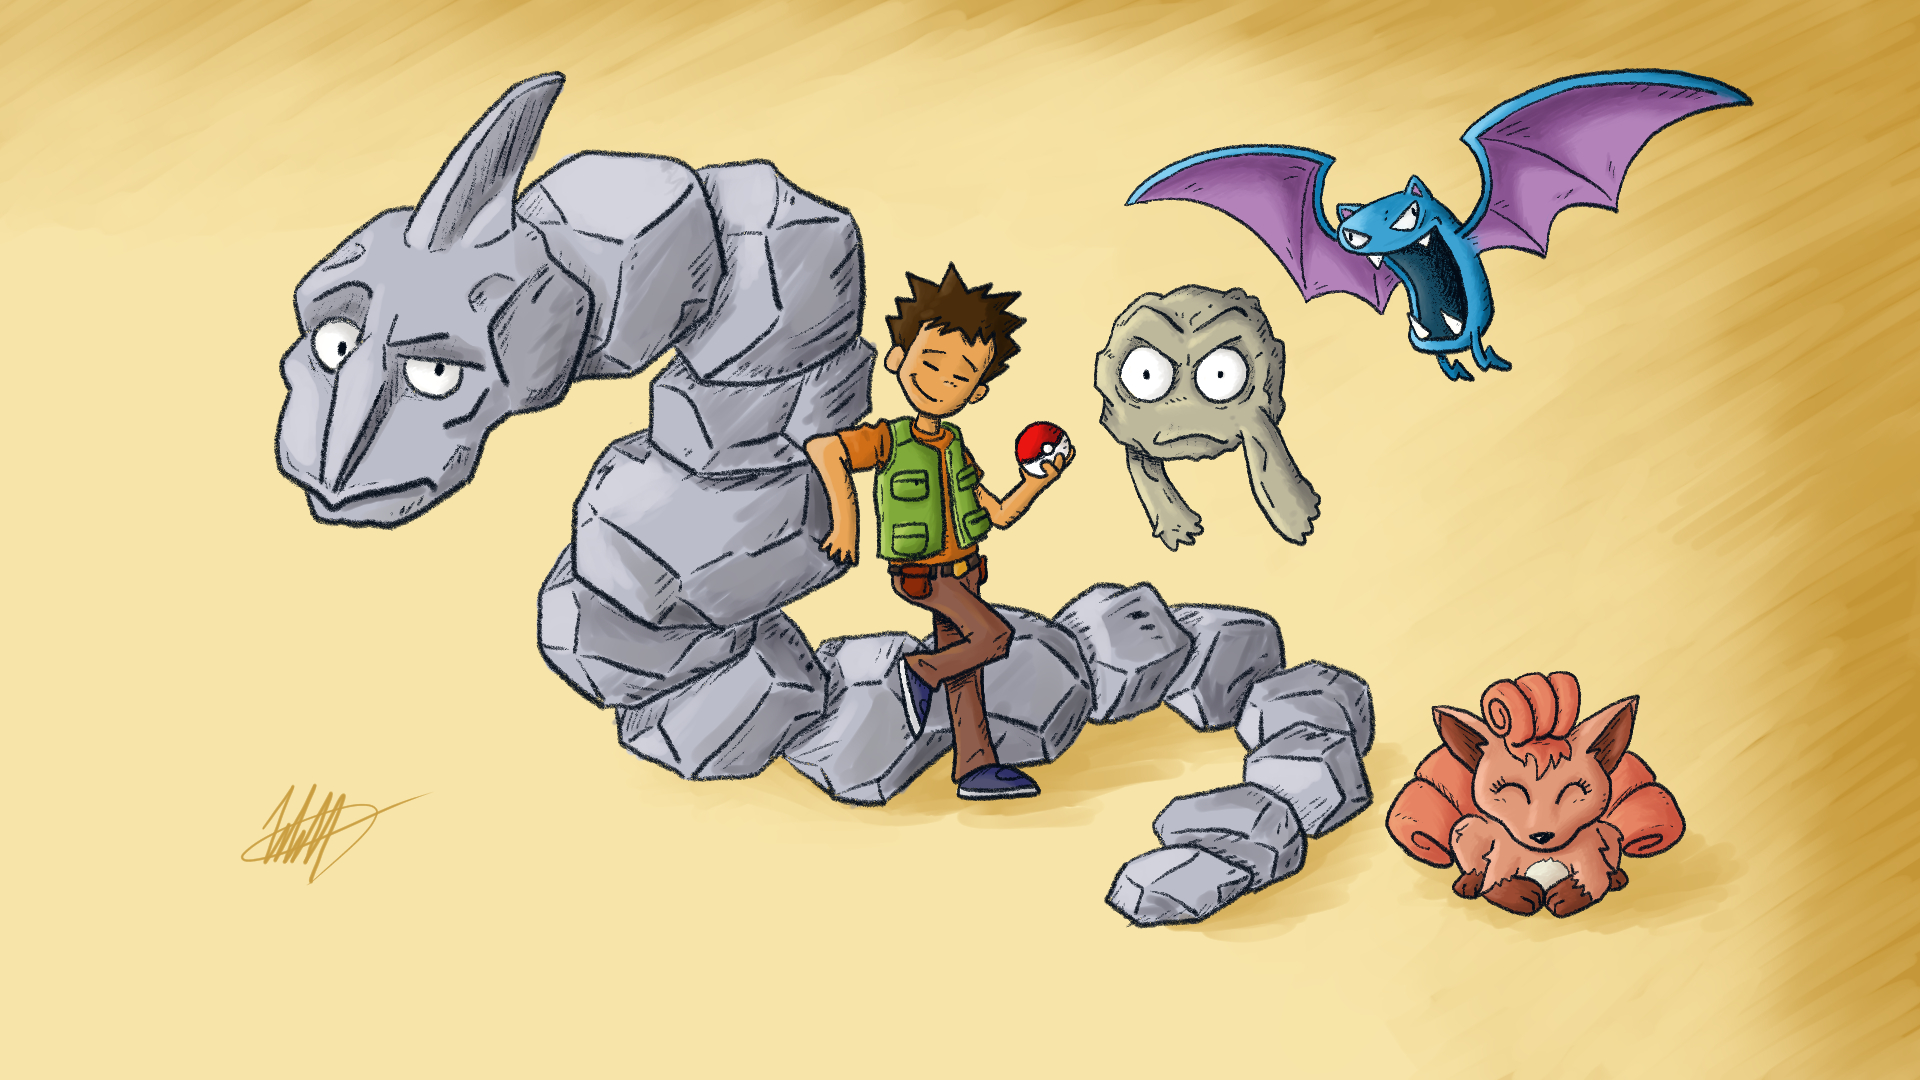 Brock and Shiny Onix (Pokemon) by EBOTIZER on DeviantArt